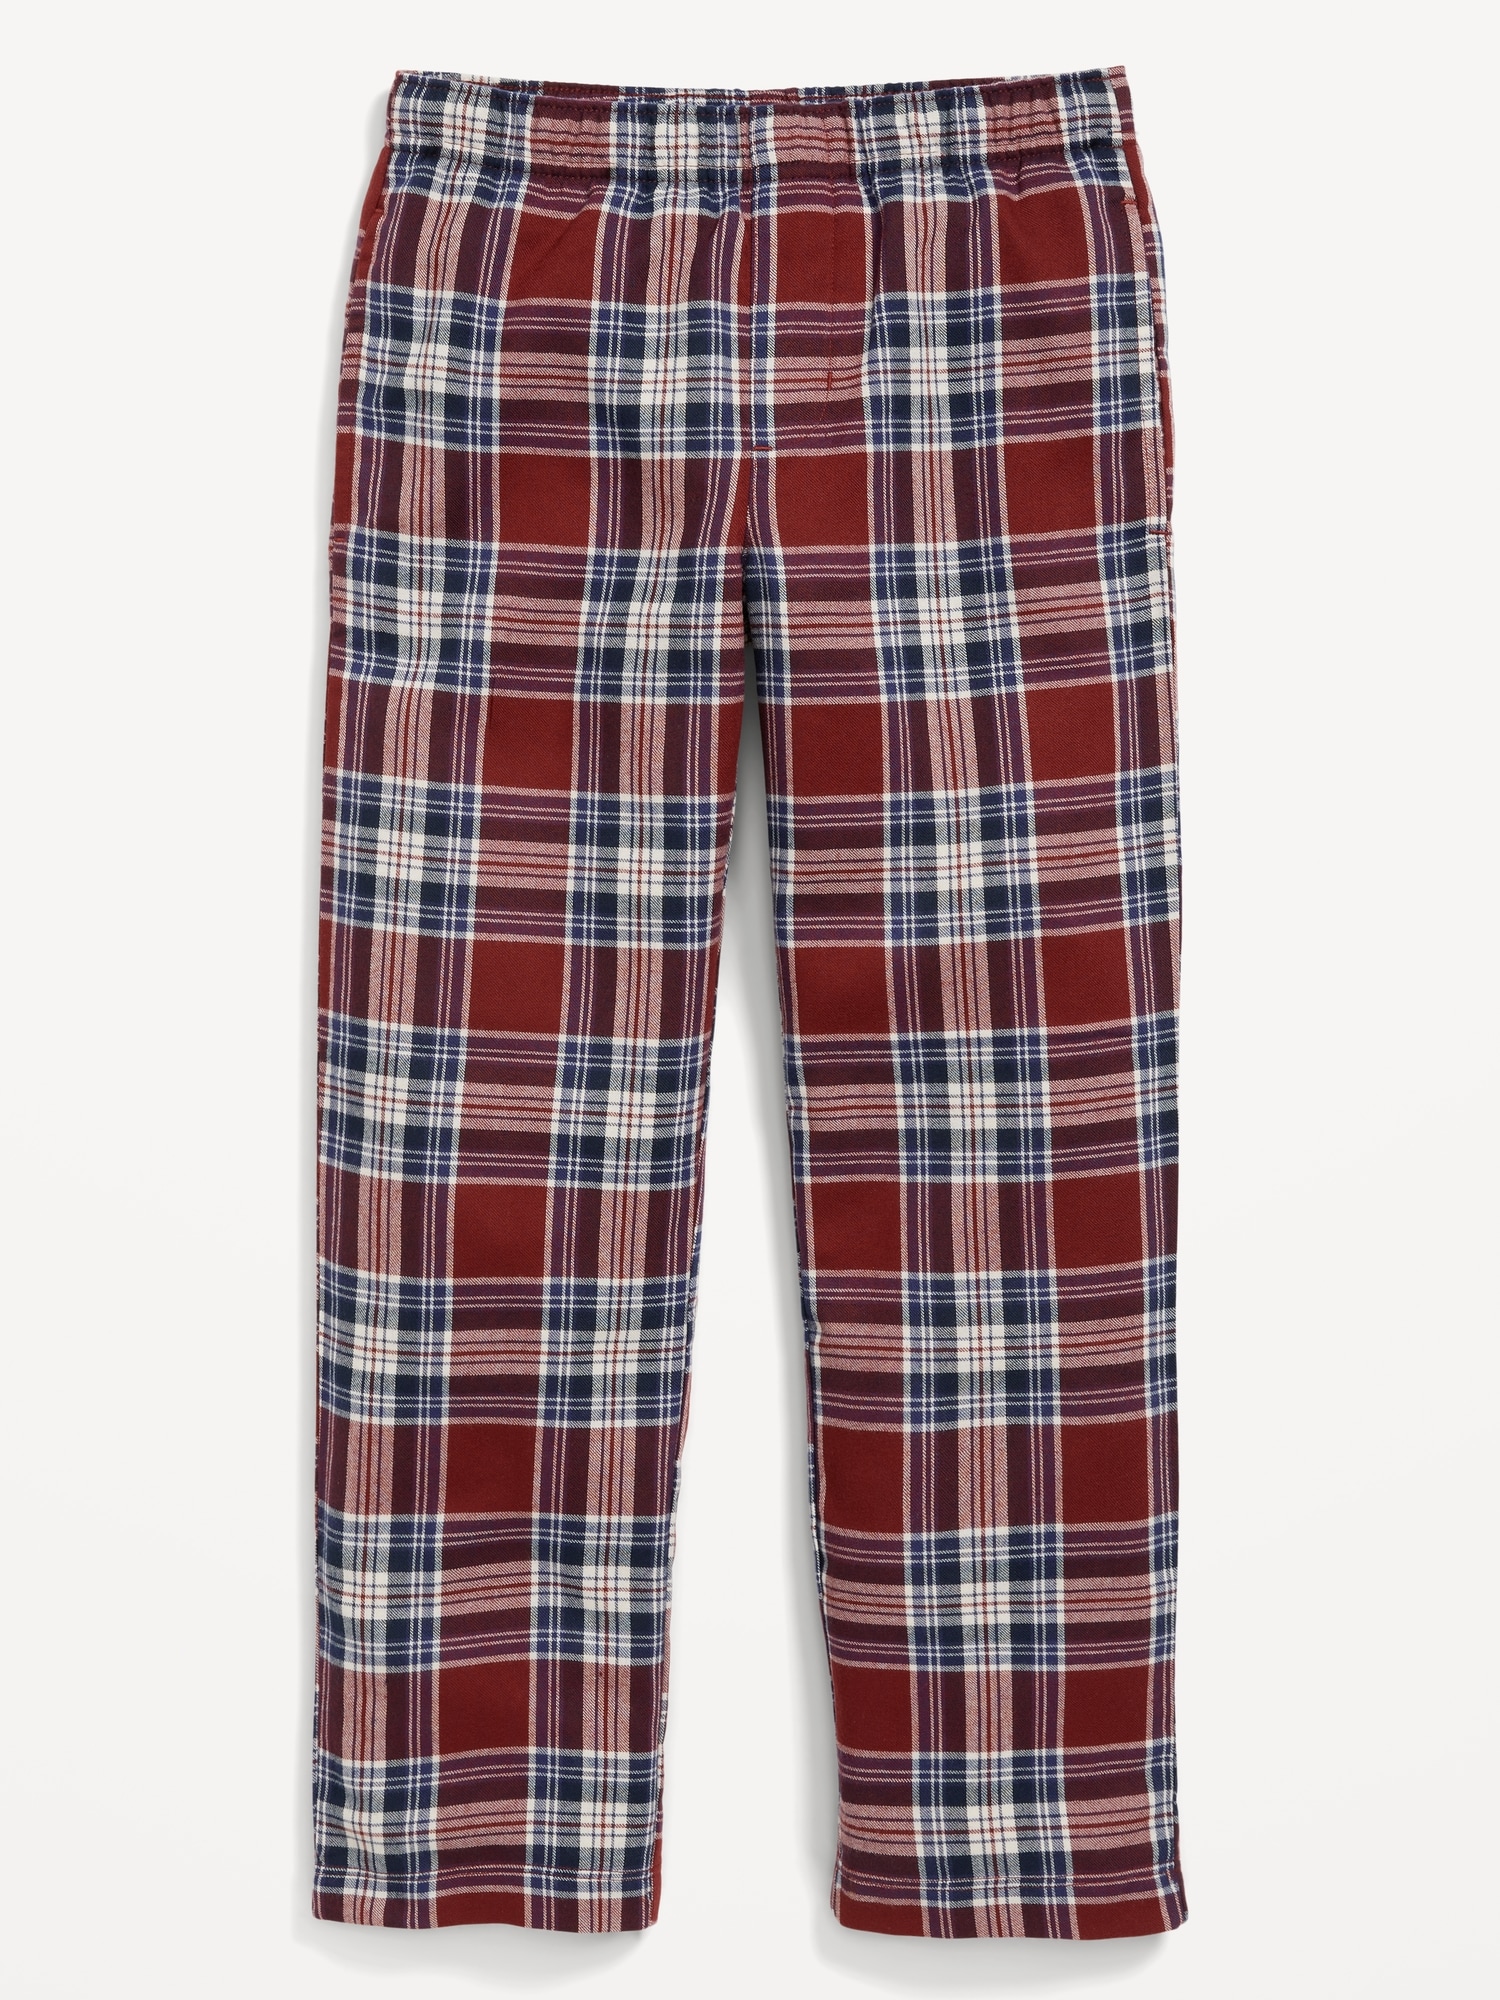 Printed Flannel Pajama Pants